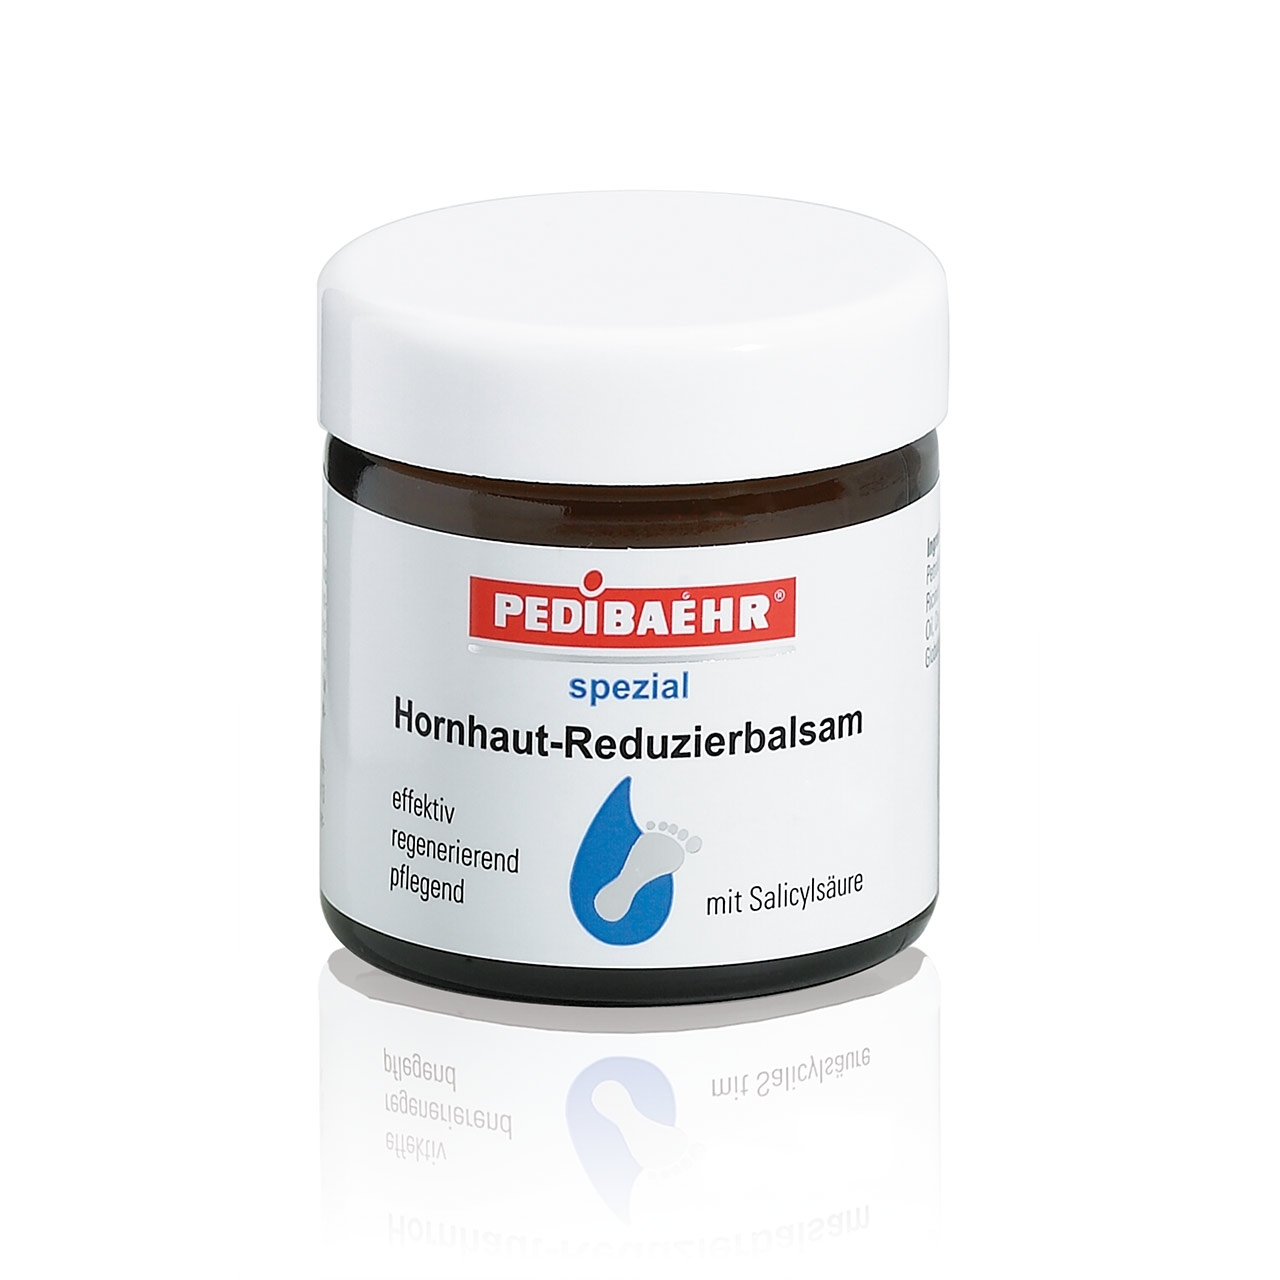 PEDIBAEHR Hornhaut-Reduzierbalsam mit Salicylsäure 60 ml